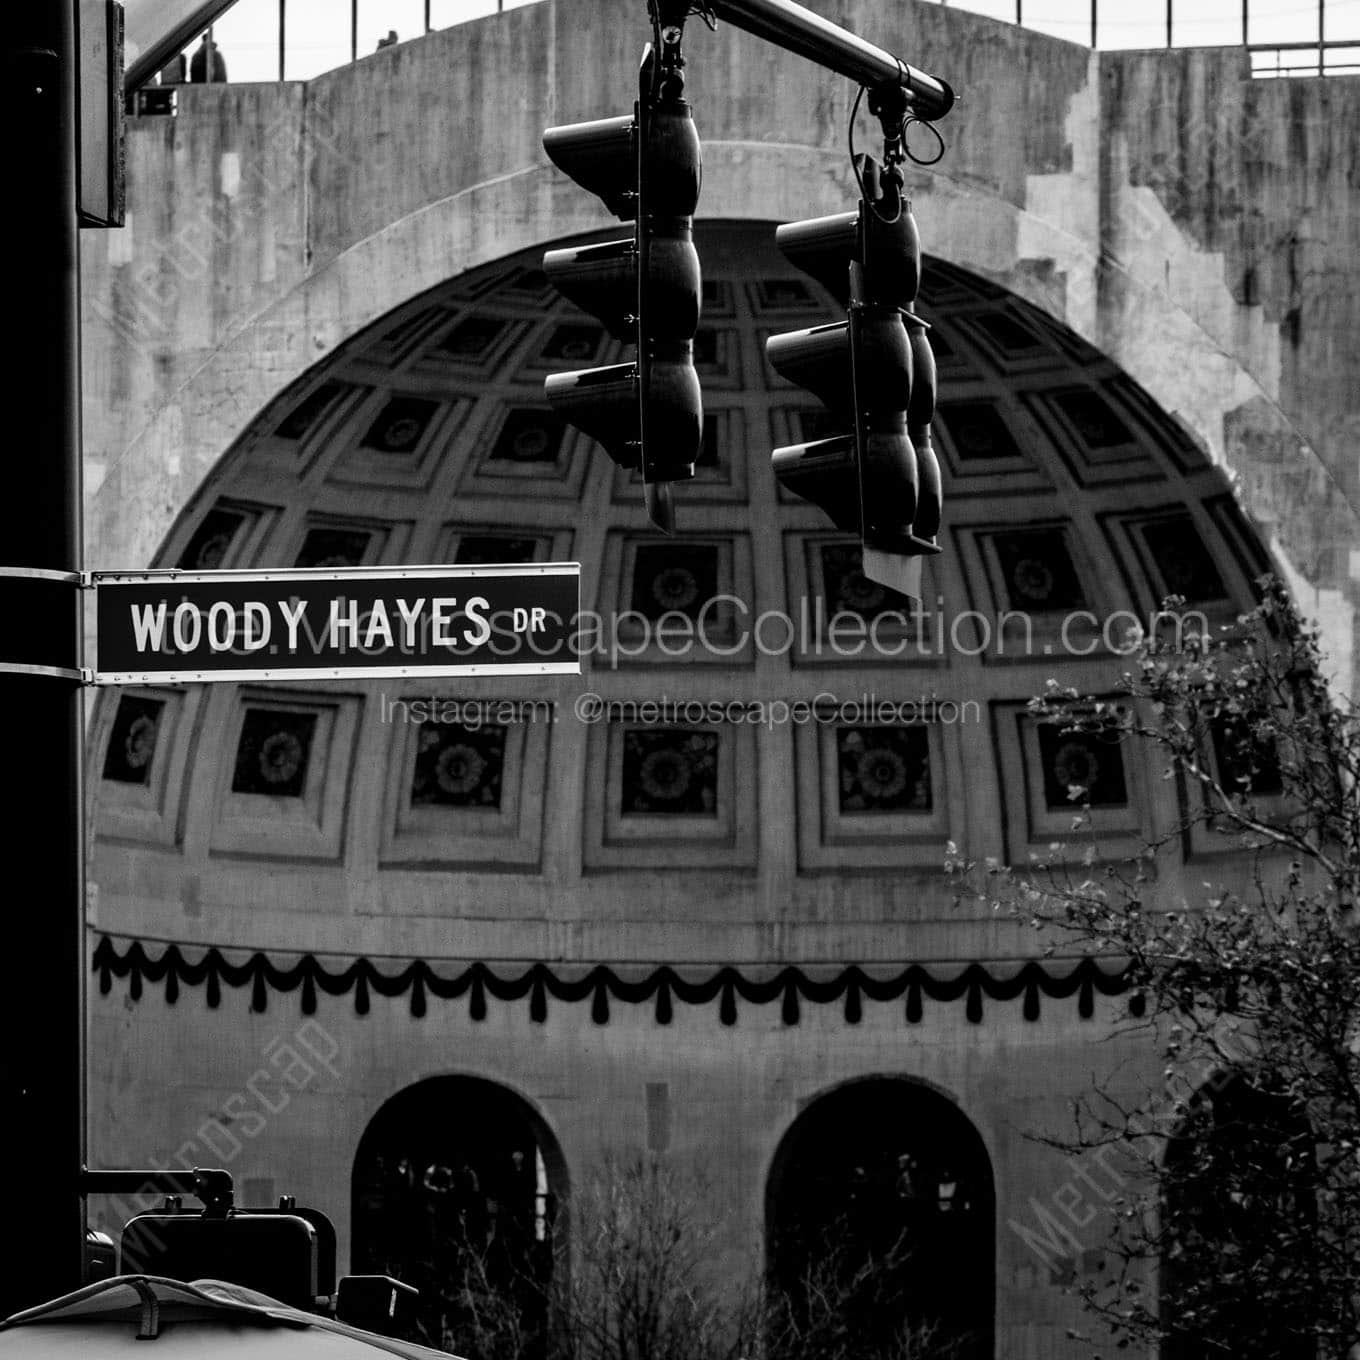 woody hayes drive ohio stadium Black & White Wall Art